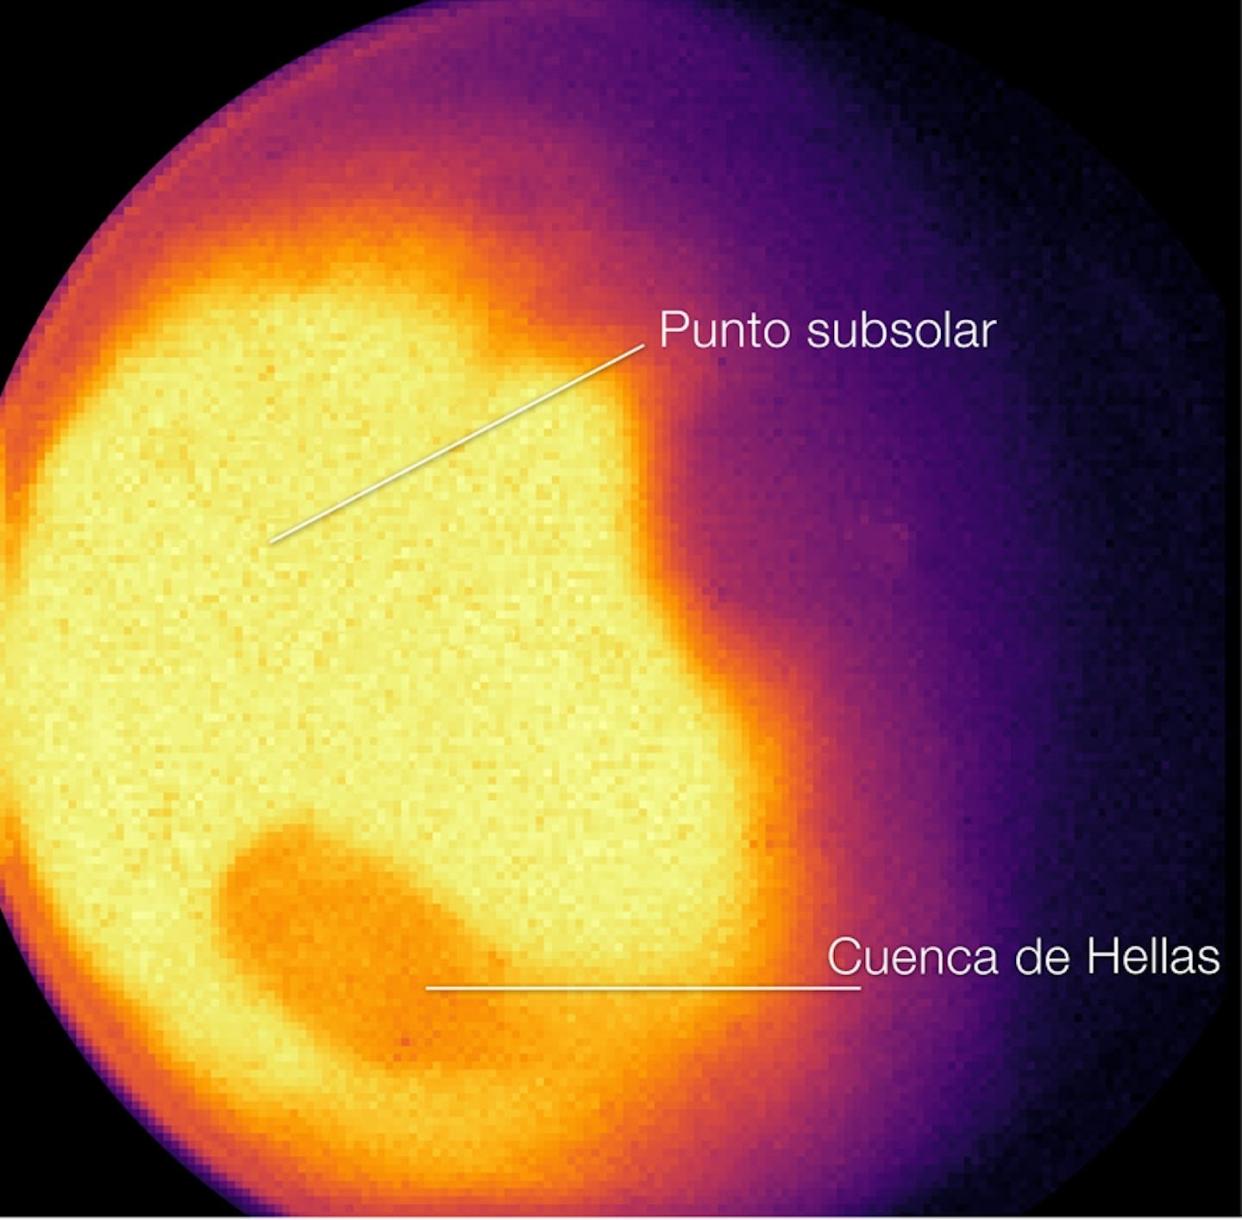 Imagen en infrarrojo del planeta Marte registrada por el telescopio espacial James Webb. NASA/ESA.